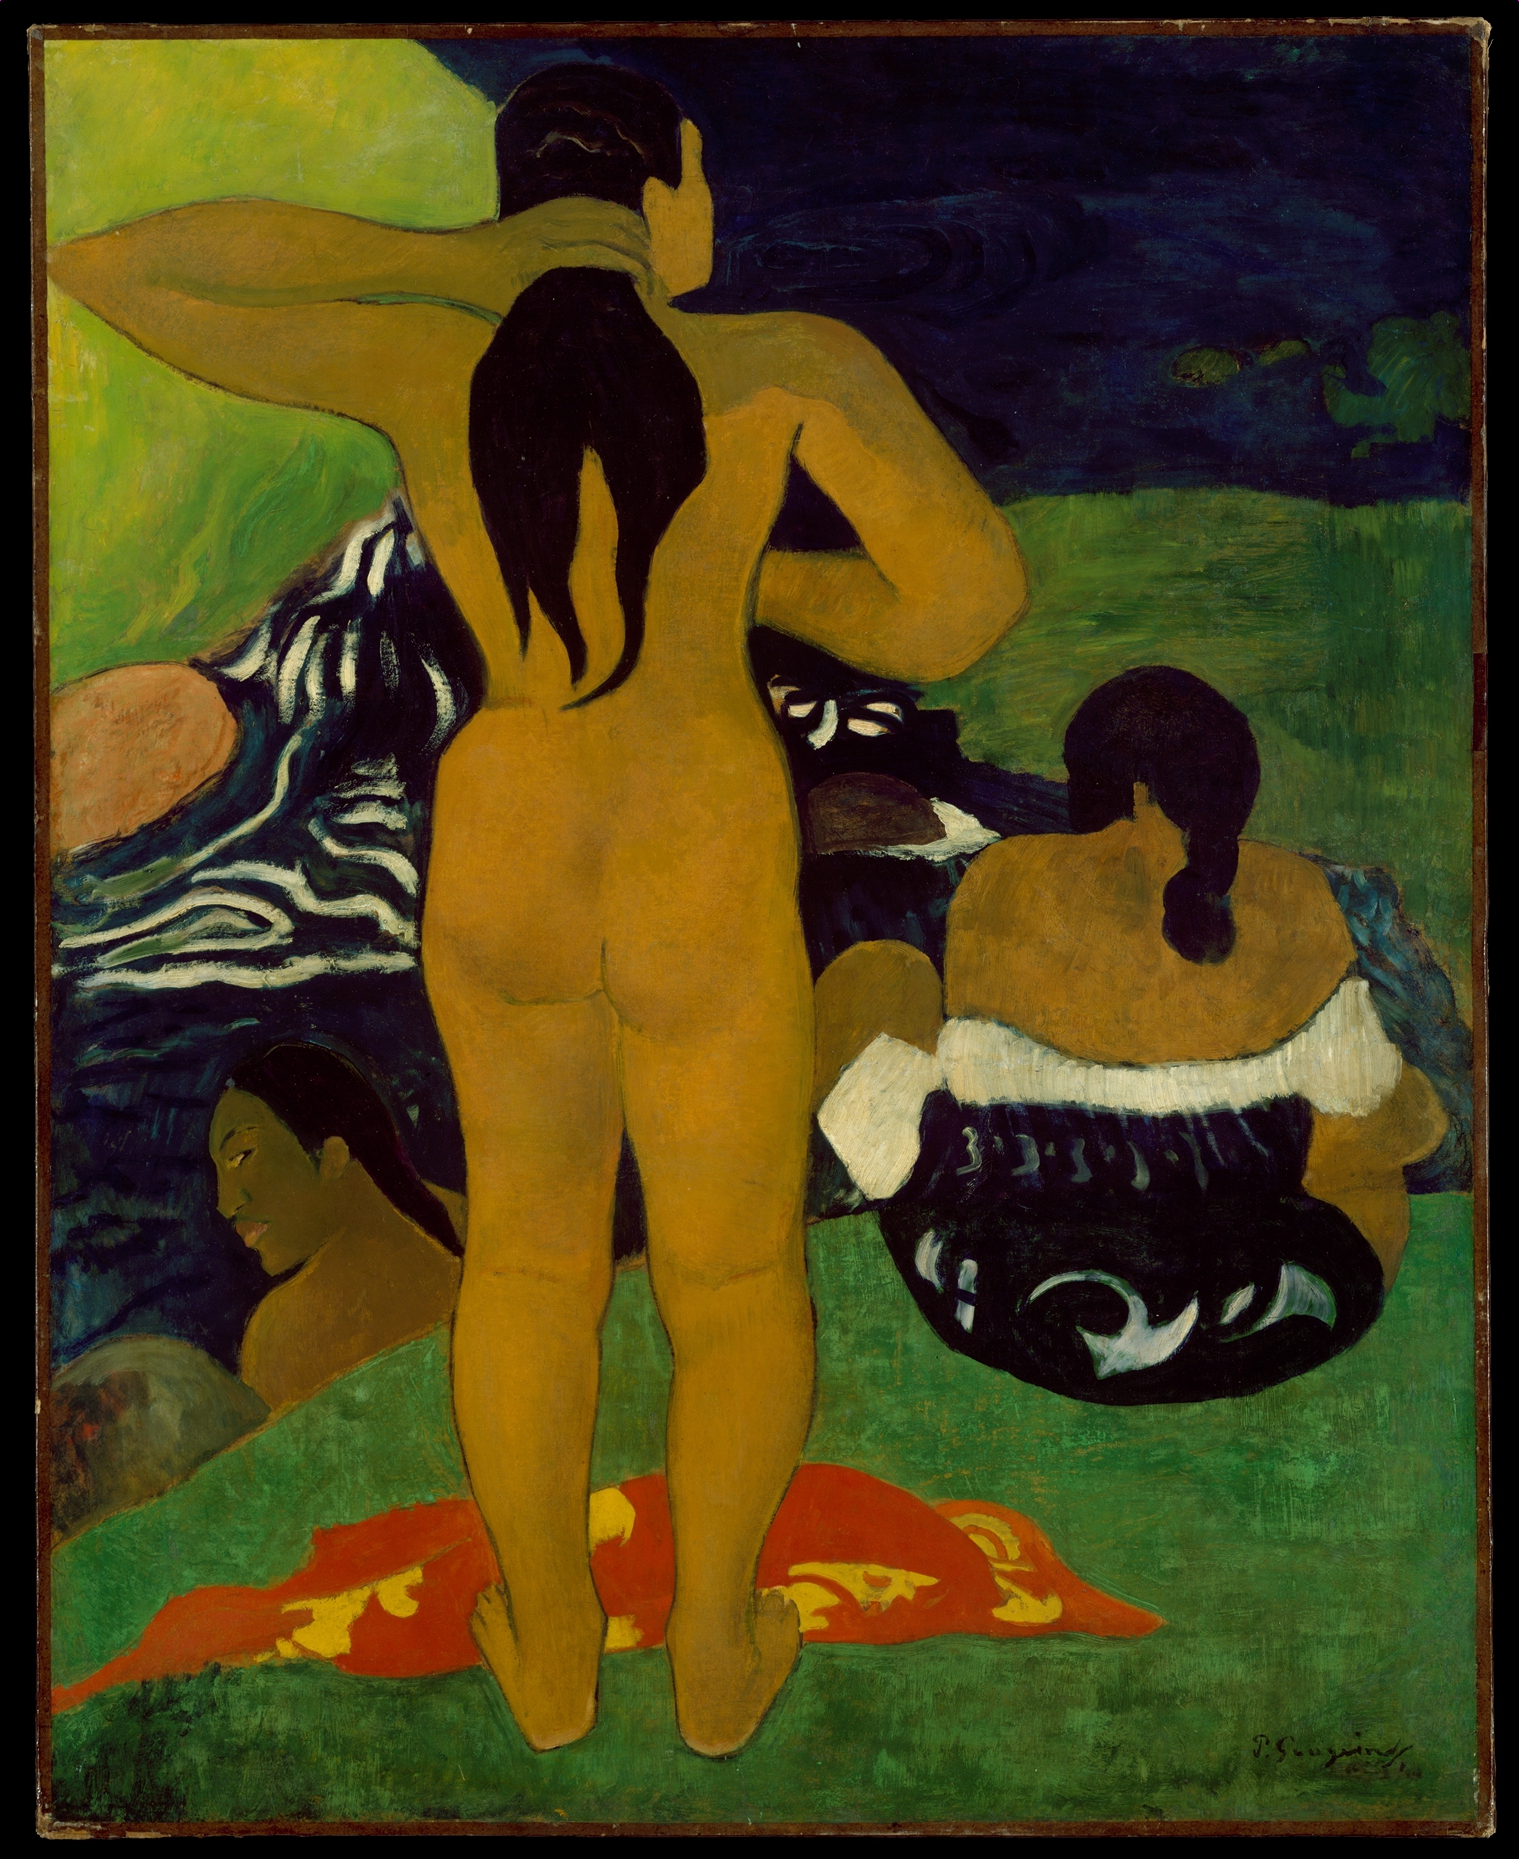 Mujeres tahitianas bañándose by Paul Gauguin - 1892 - 43 3/4 x 35 1/8 in Museo Metropolitano de Arte